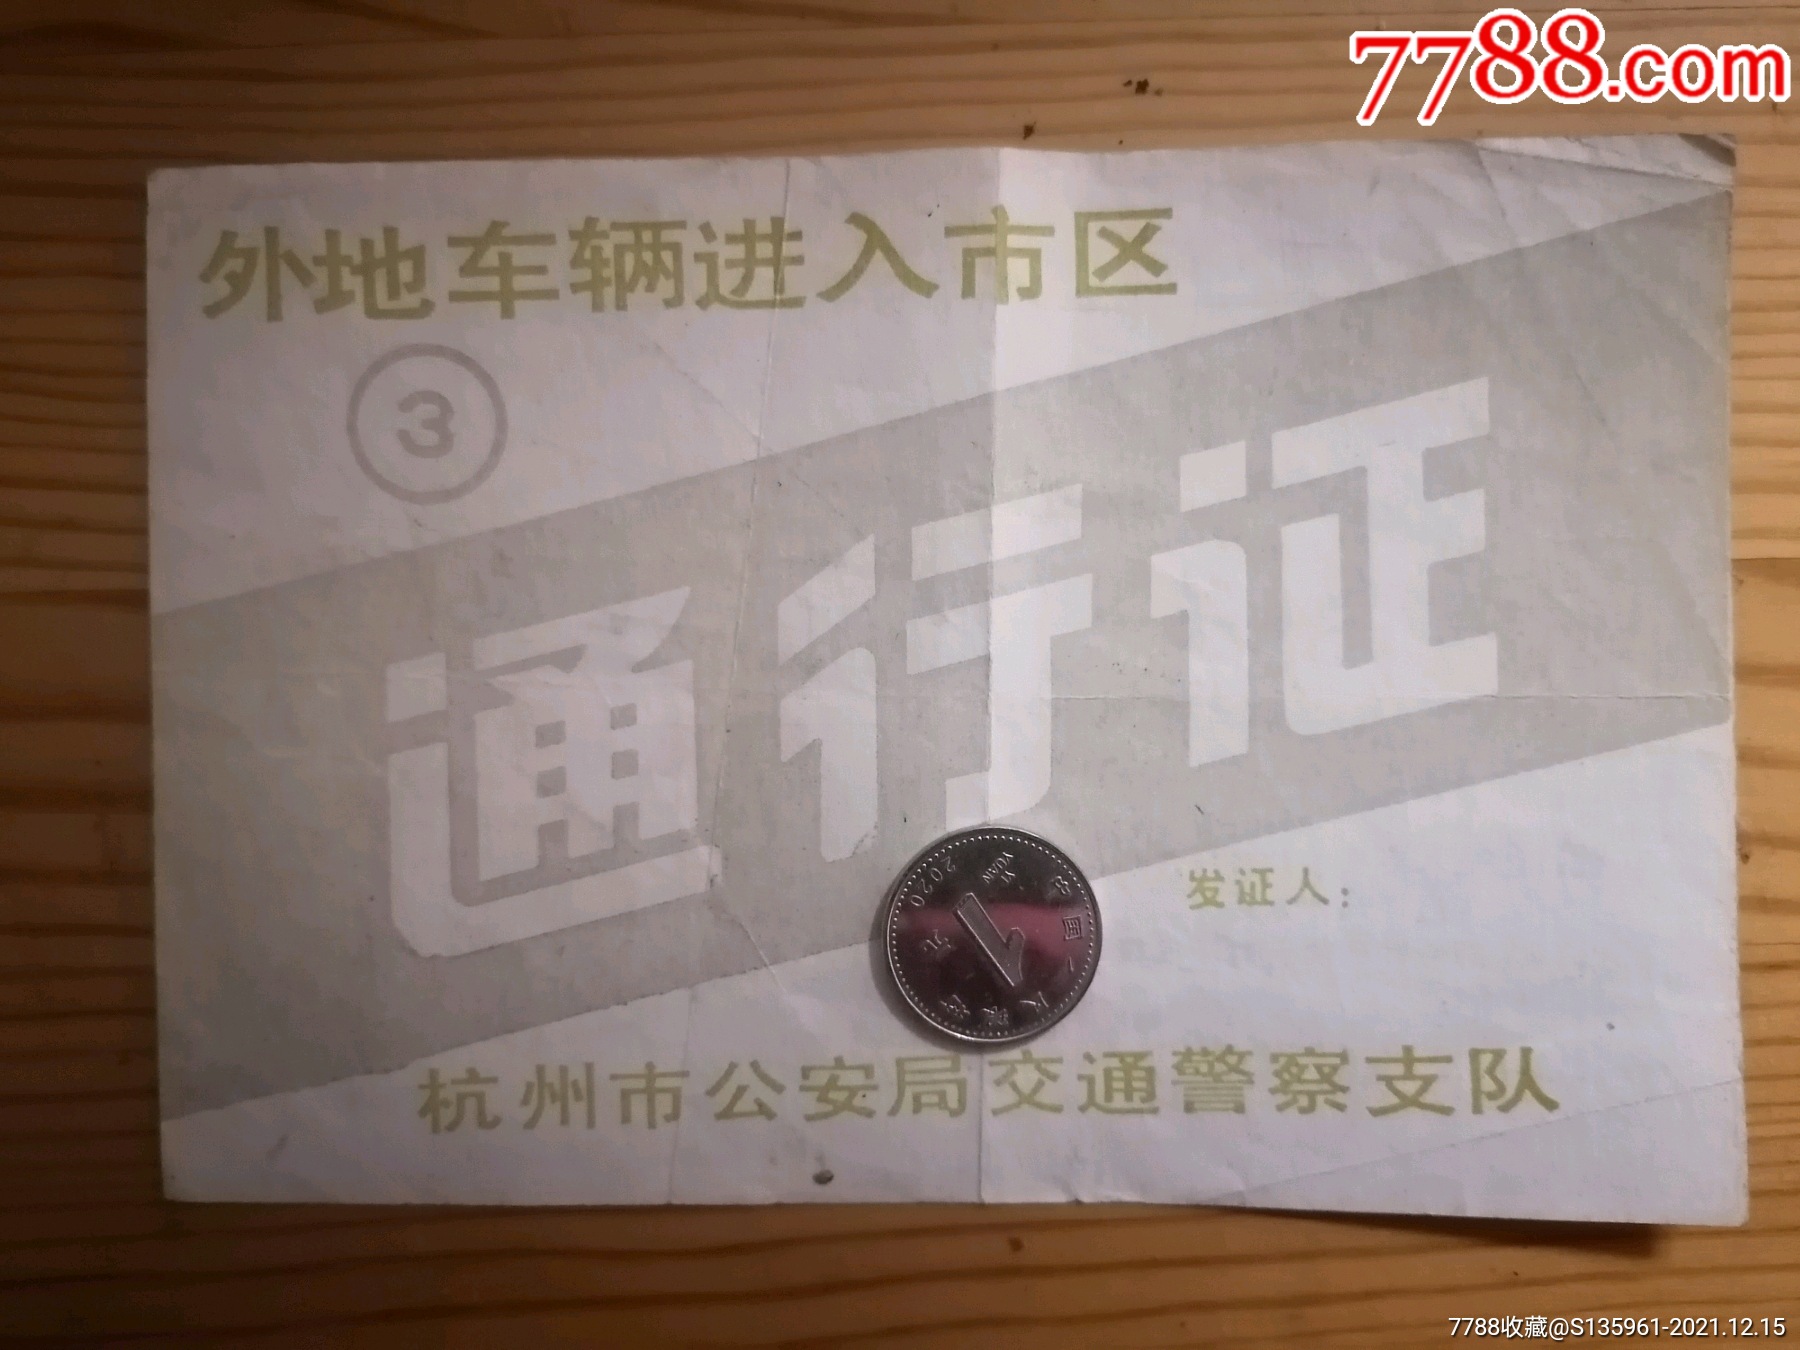 1992年杭州市安局交警支队外地车辆进入市区通行证